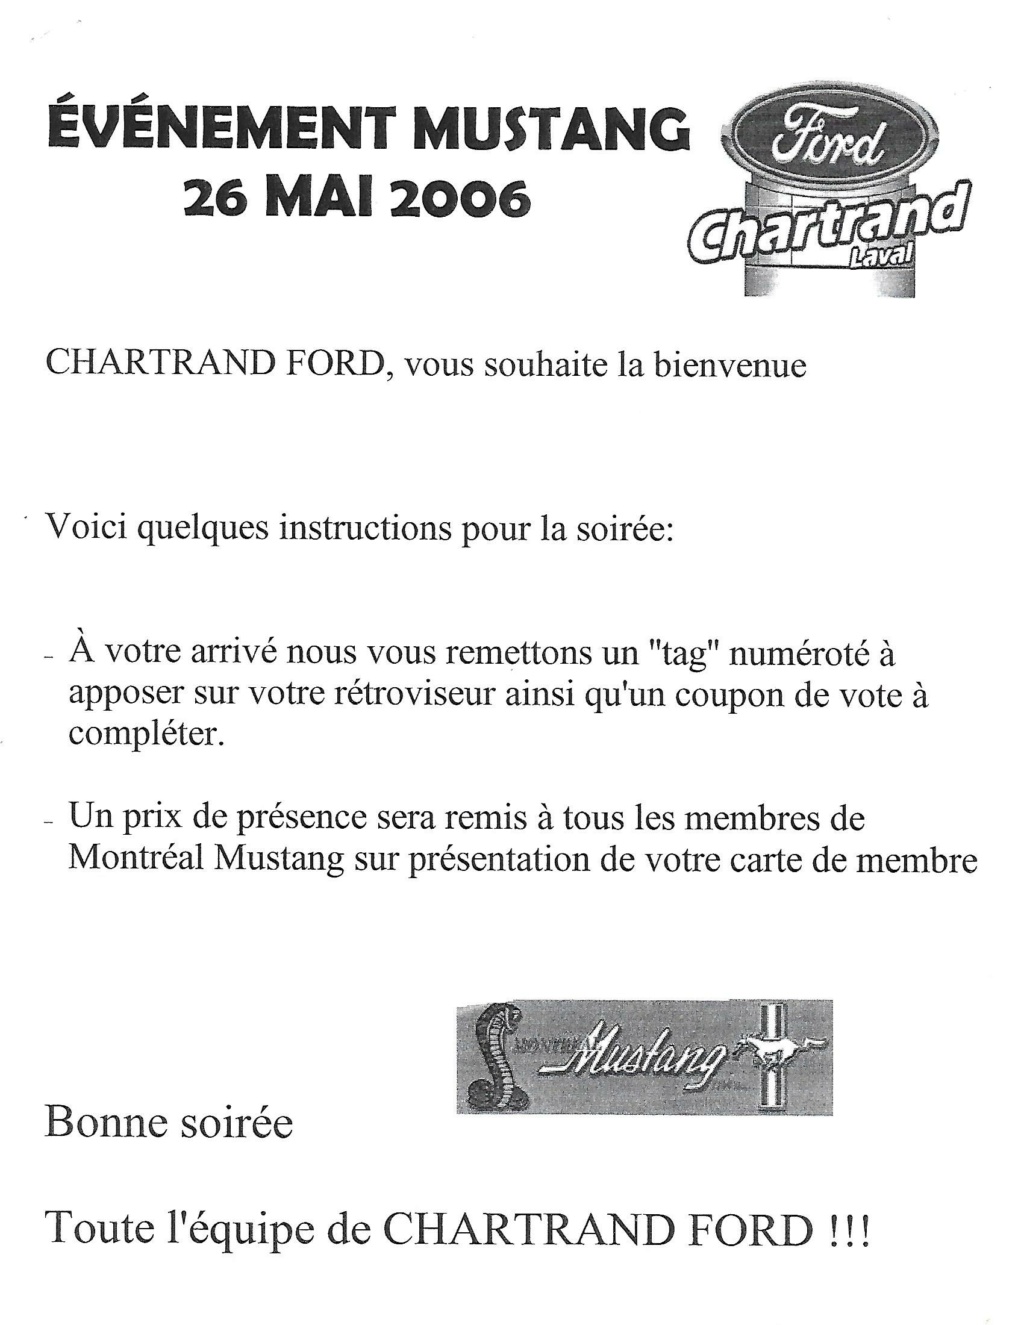 Montréal Mustang: 40 ans et + d’activités! (Photos-Vidéos,etc...) - Page 19 2006-013